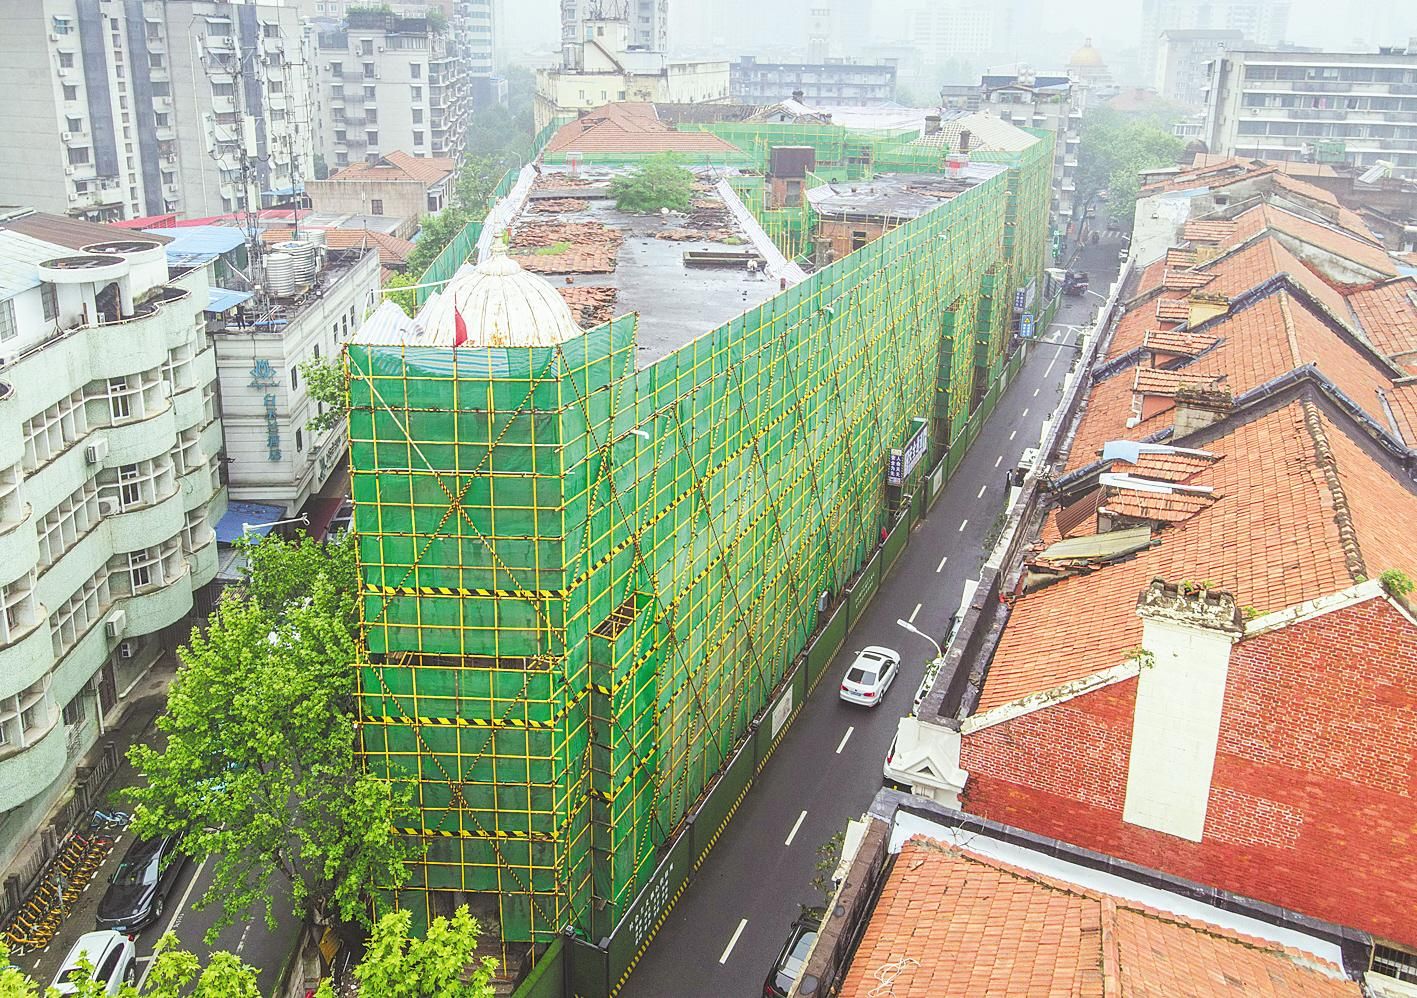 武汉汉口巴公房子保护加固及内部改造工程正抓紧施工